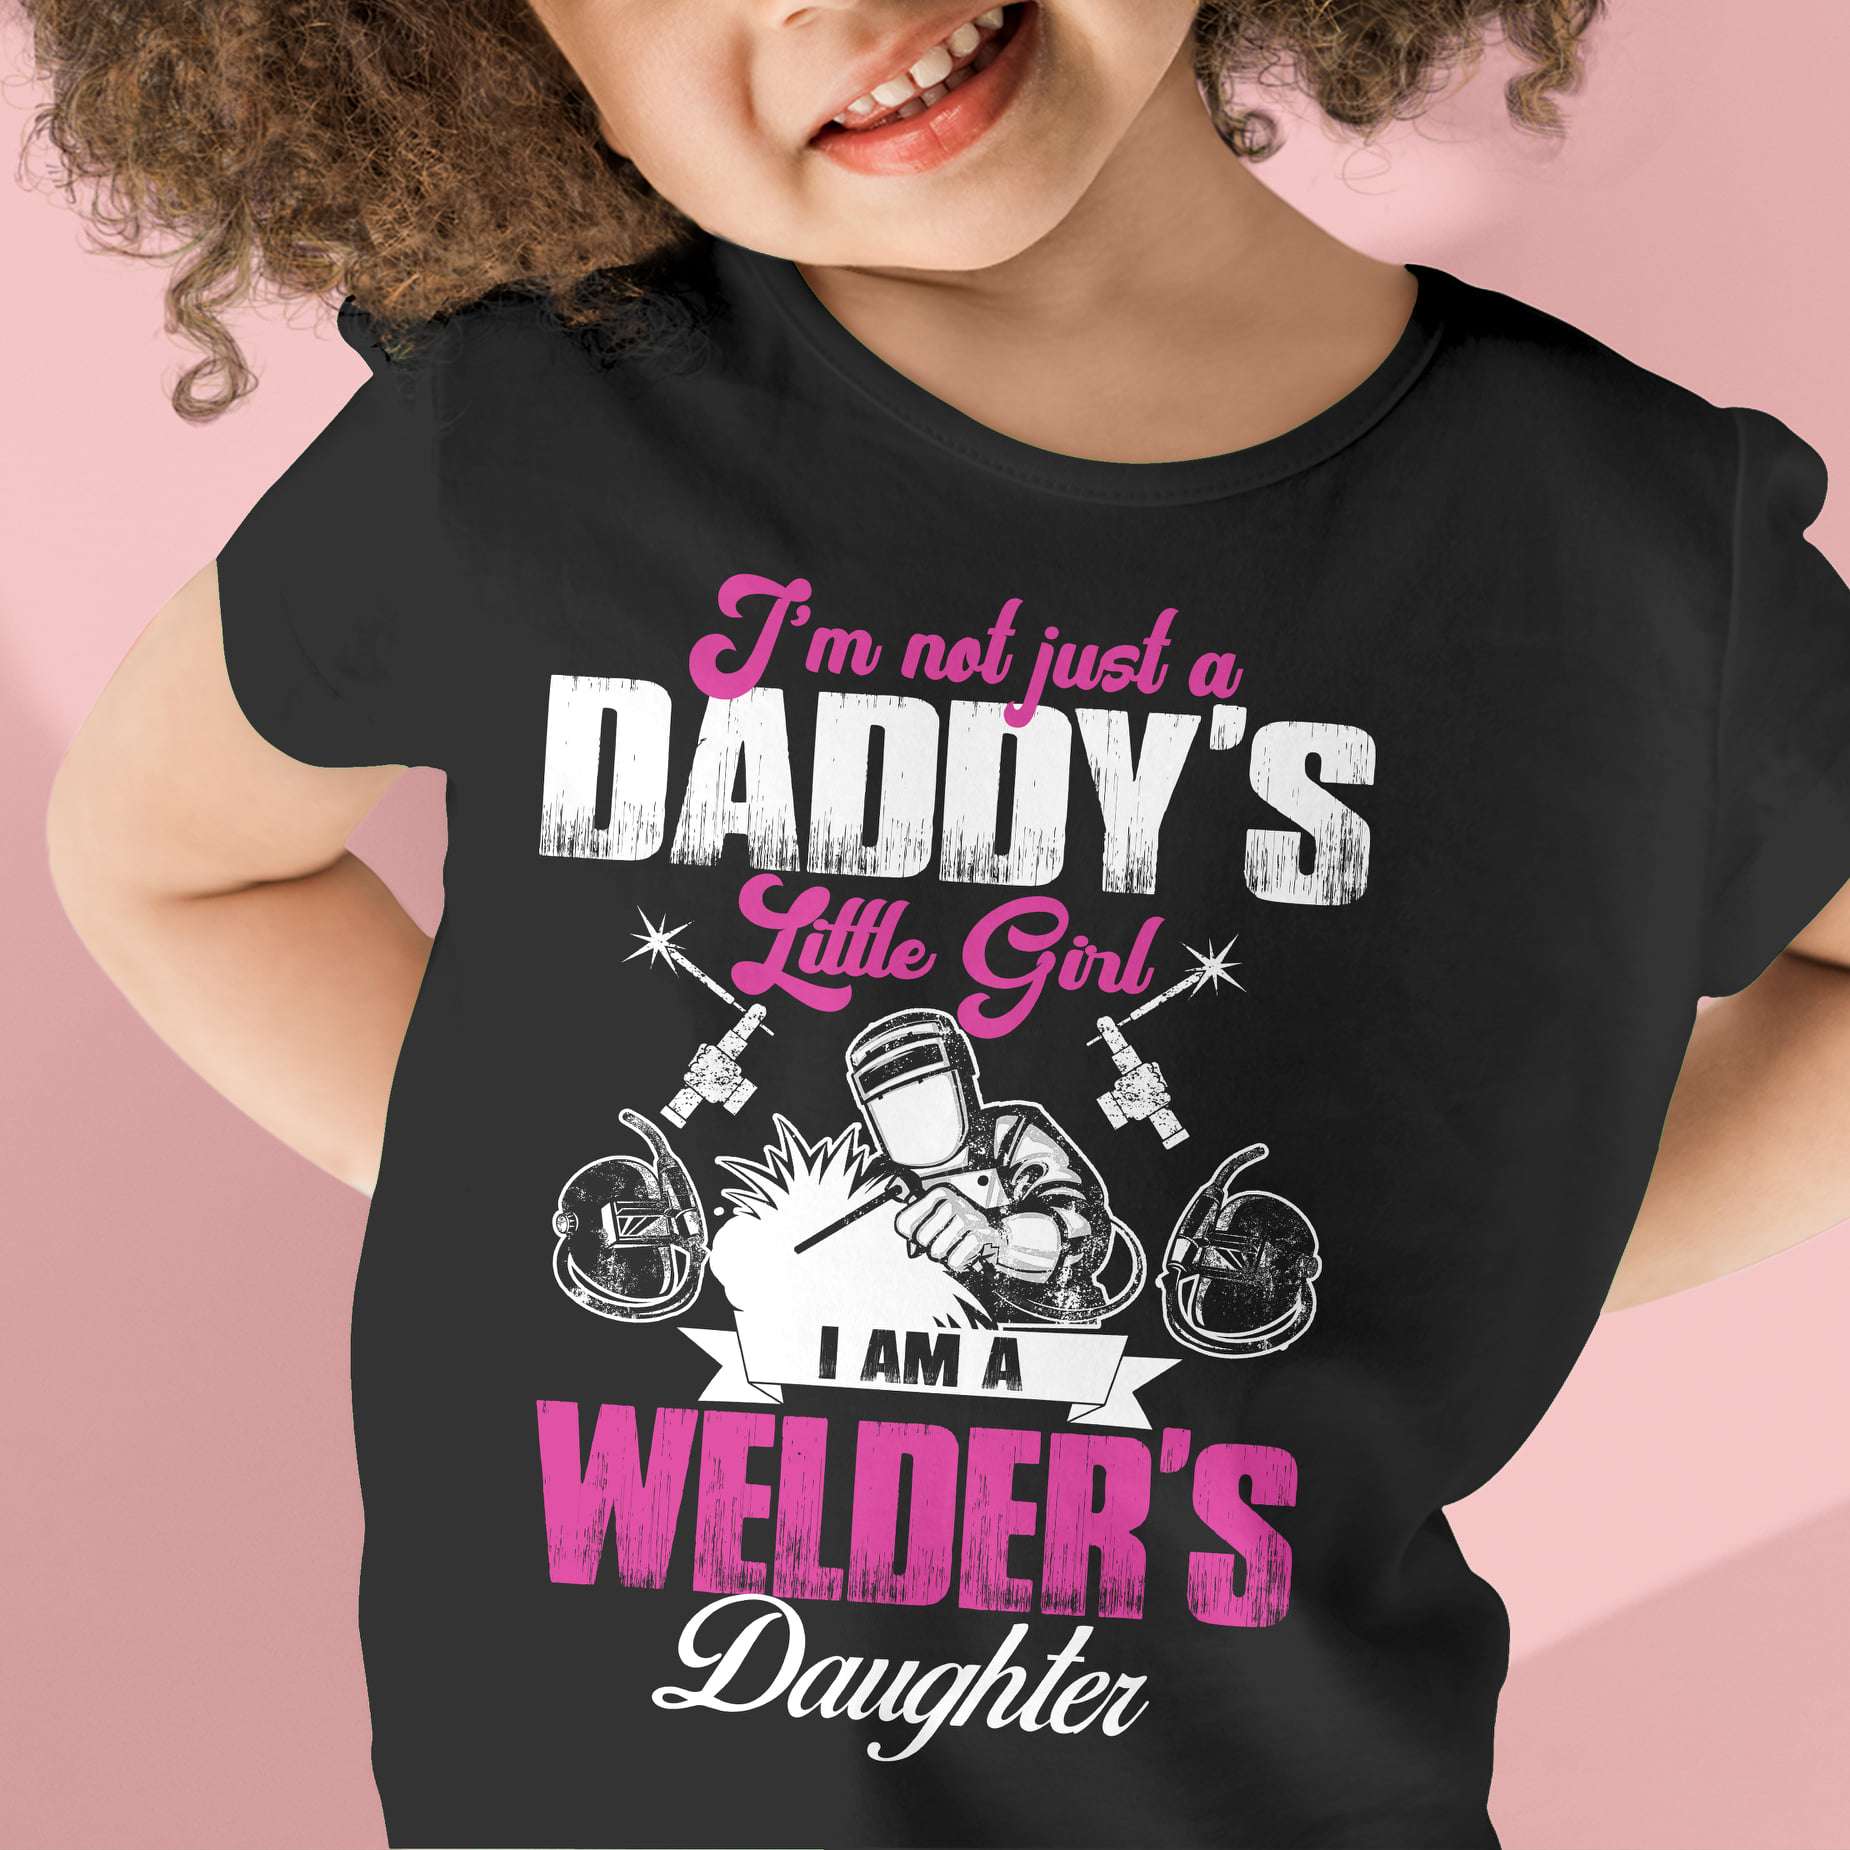 I'm not just a daddy's little girl, I am a welder's daughter - Welder the job